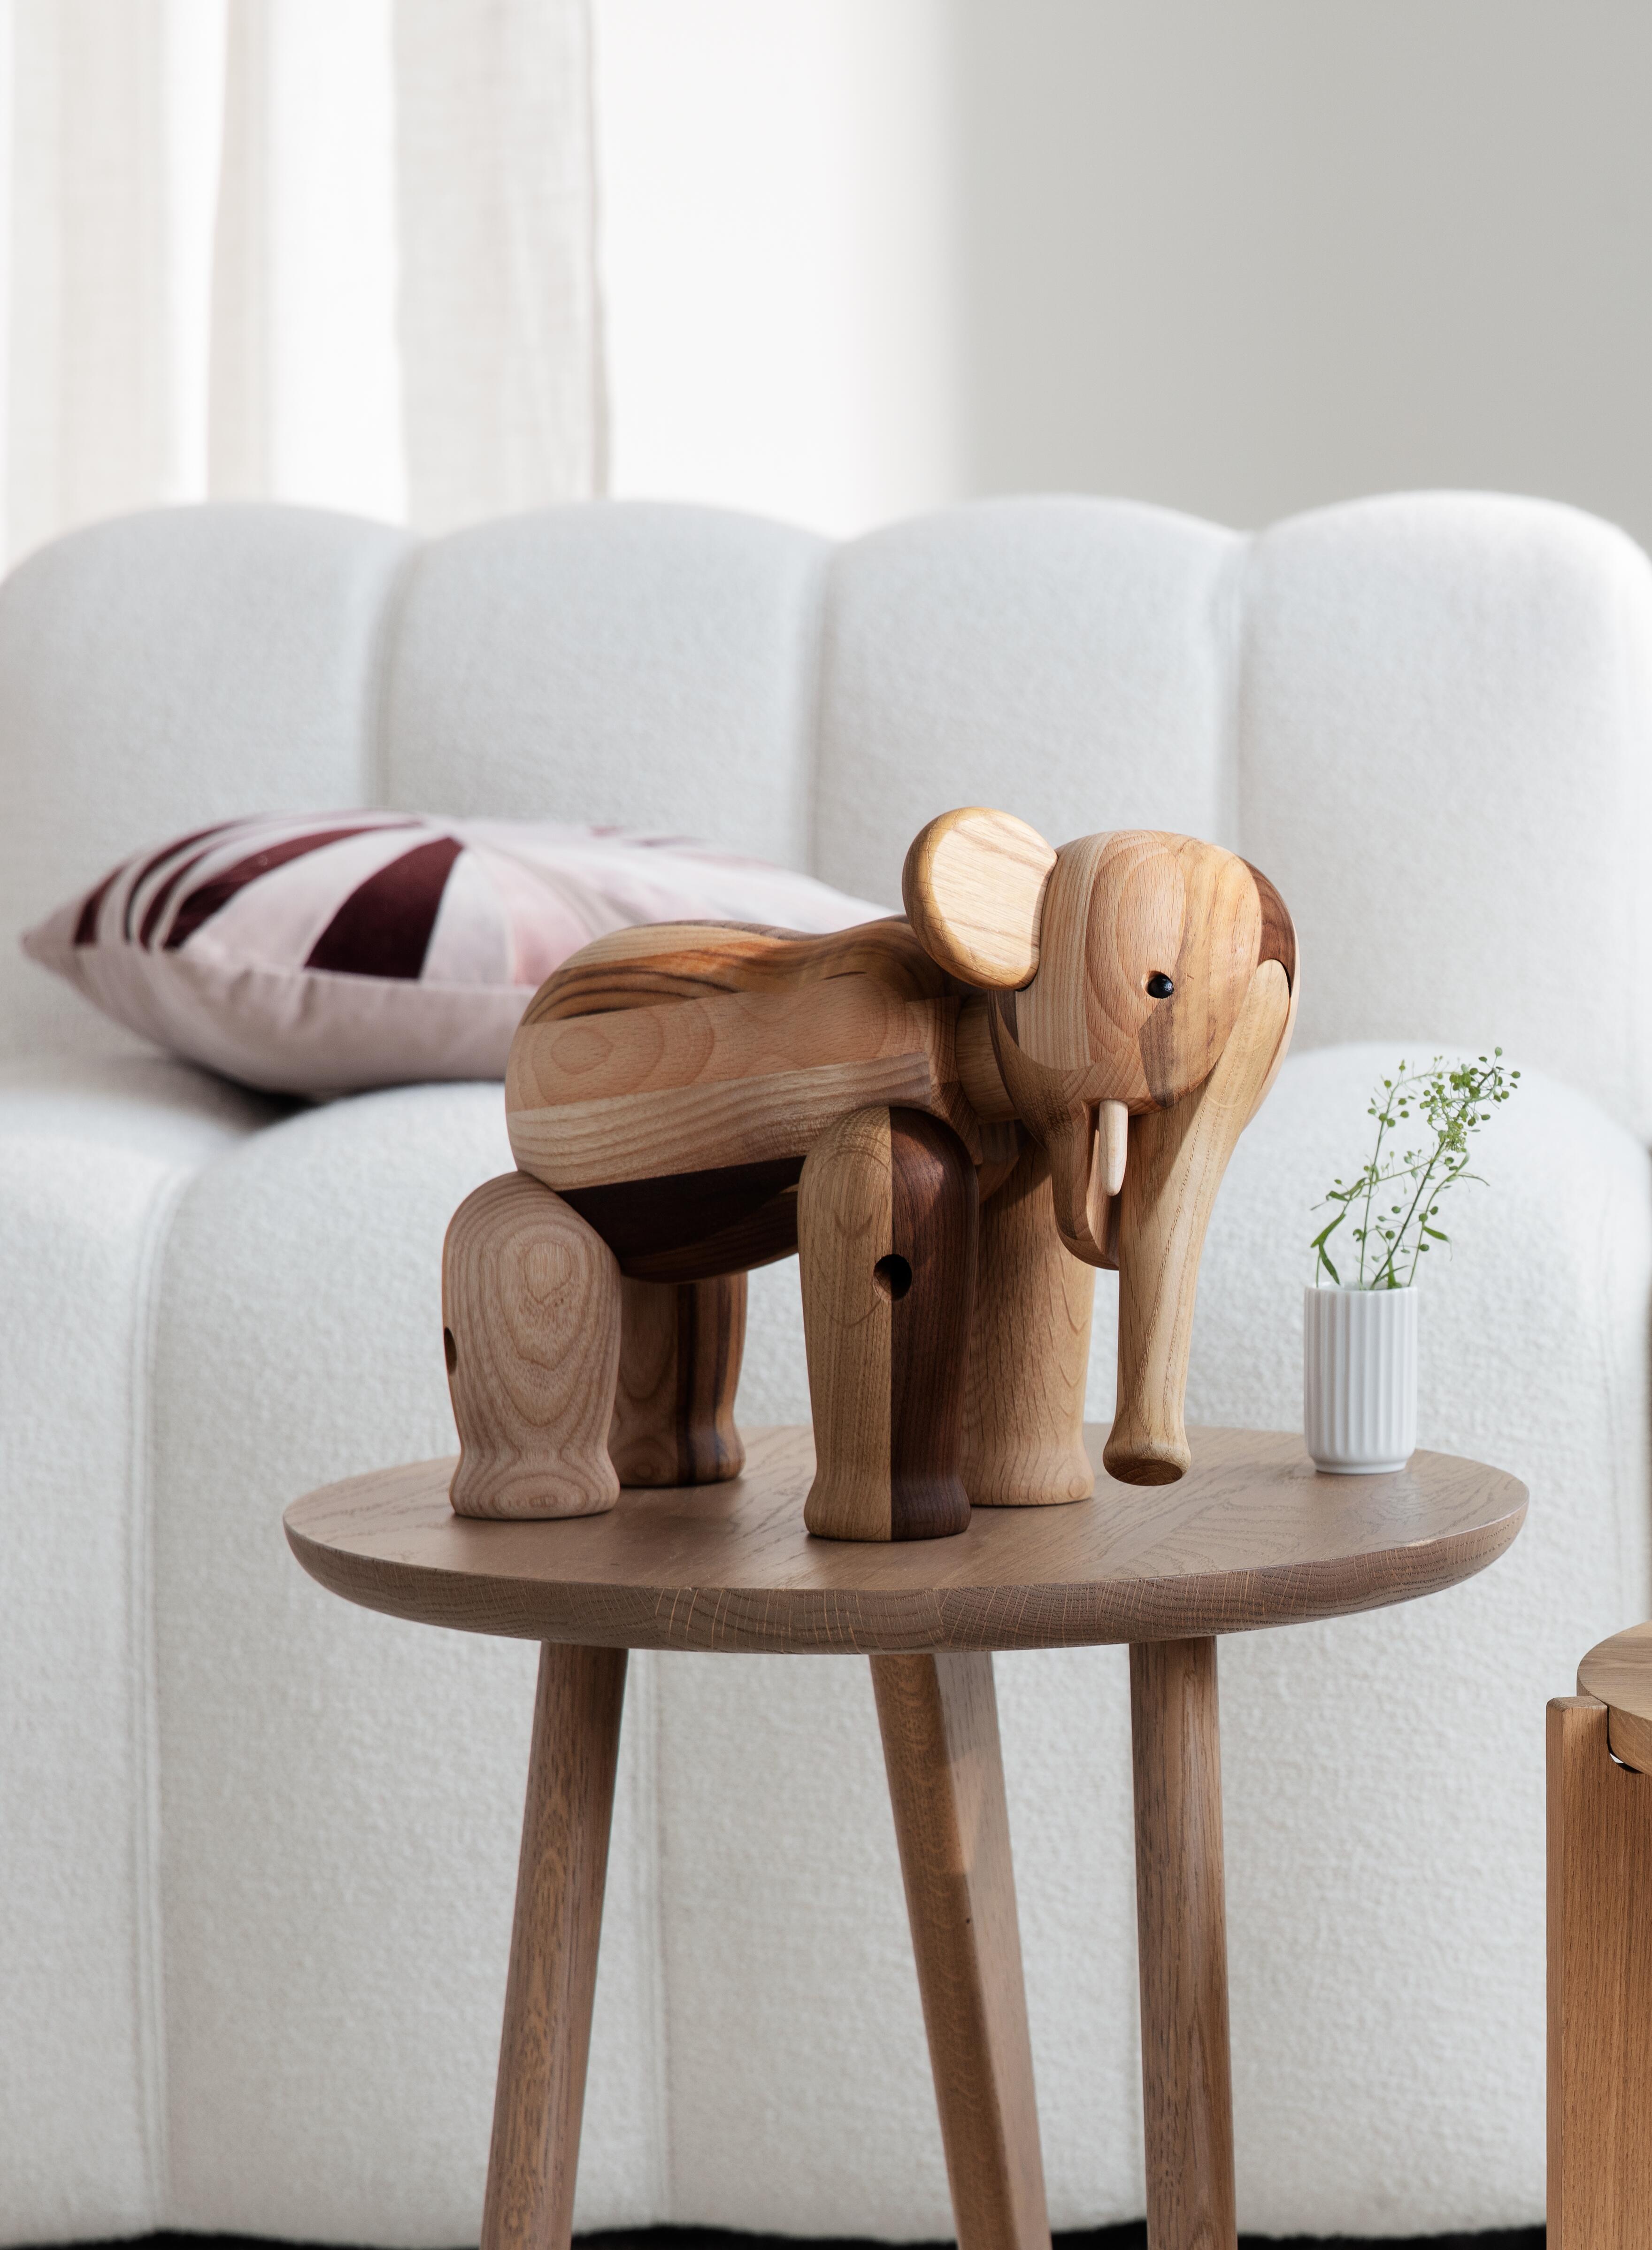 Reworked Elephant large, wooden animals, Kay Bojesen